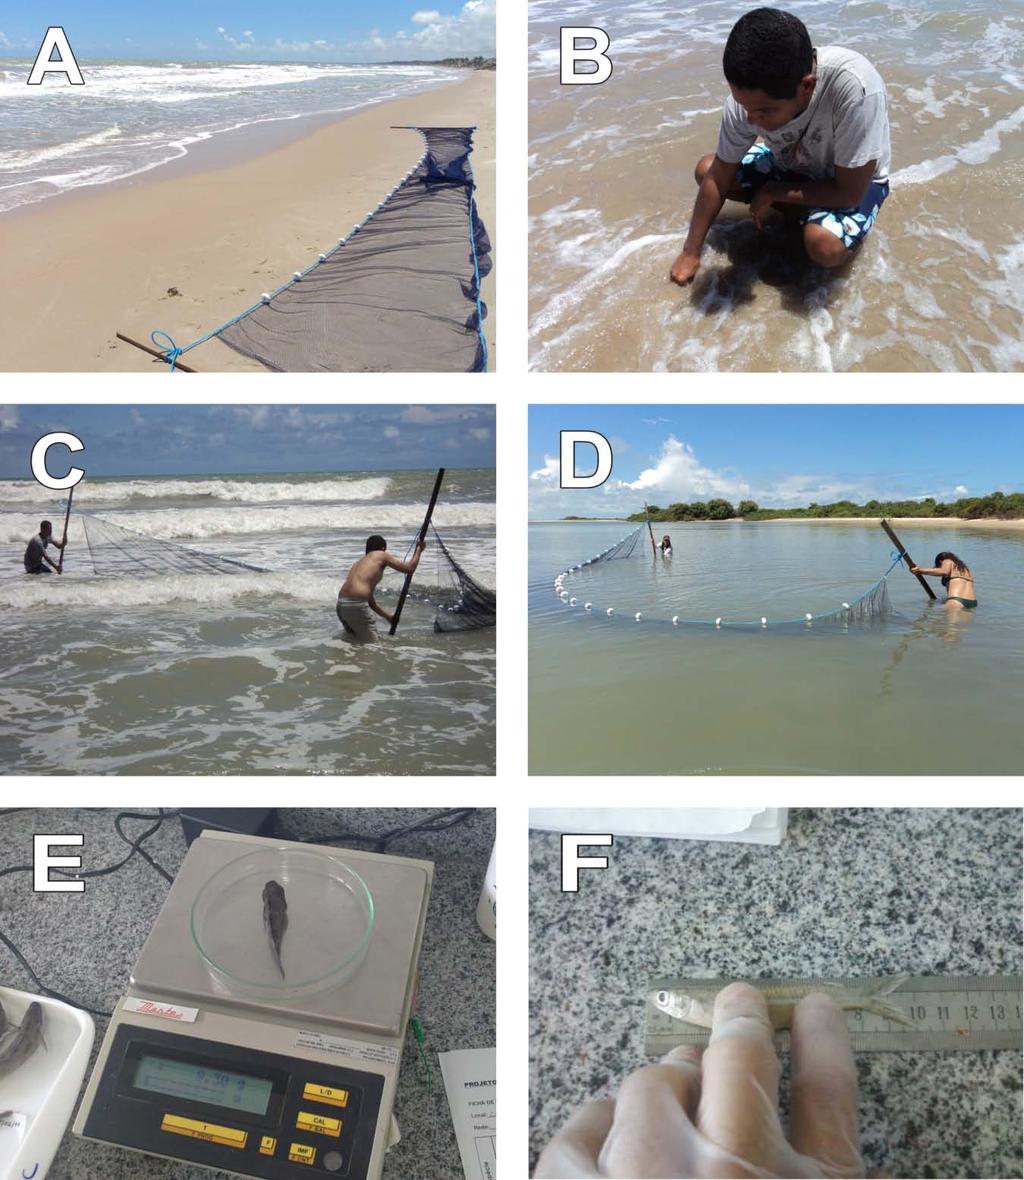 Figura 4 Trabalho de campo e em laboratório: A Rede de picaré; B Aferição de temperatura da água; C Arrasto na Praia